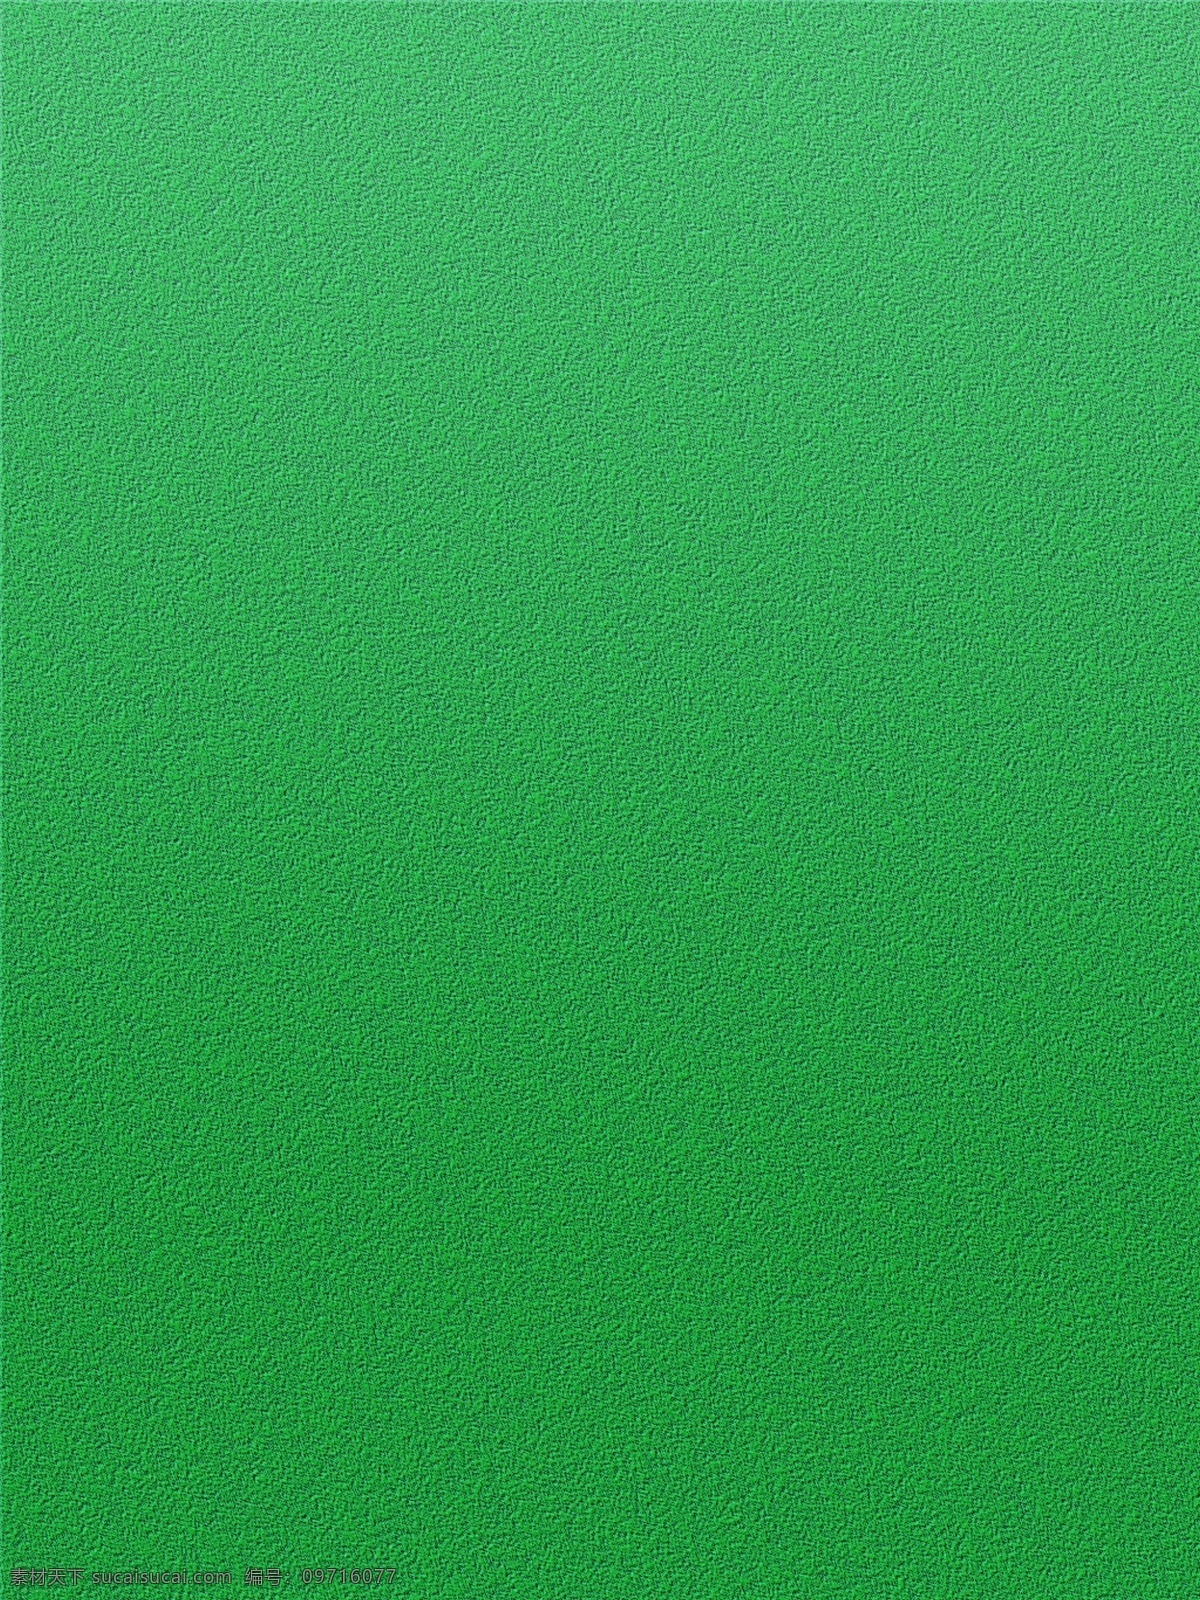 绿色 磨砂 纹理 背景 简约 背景素材 分层